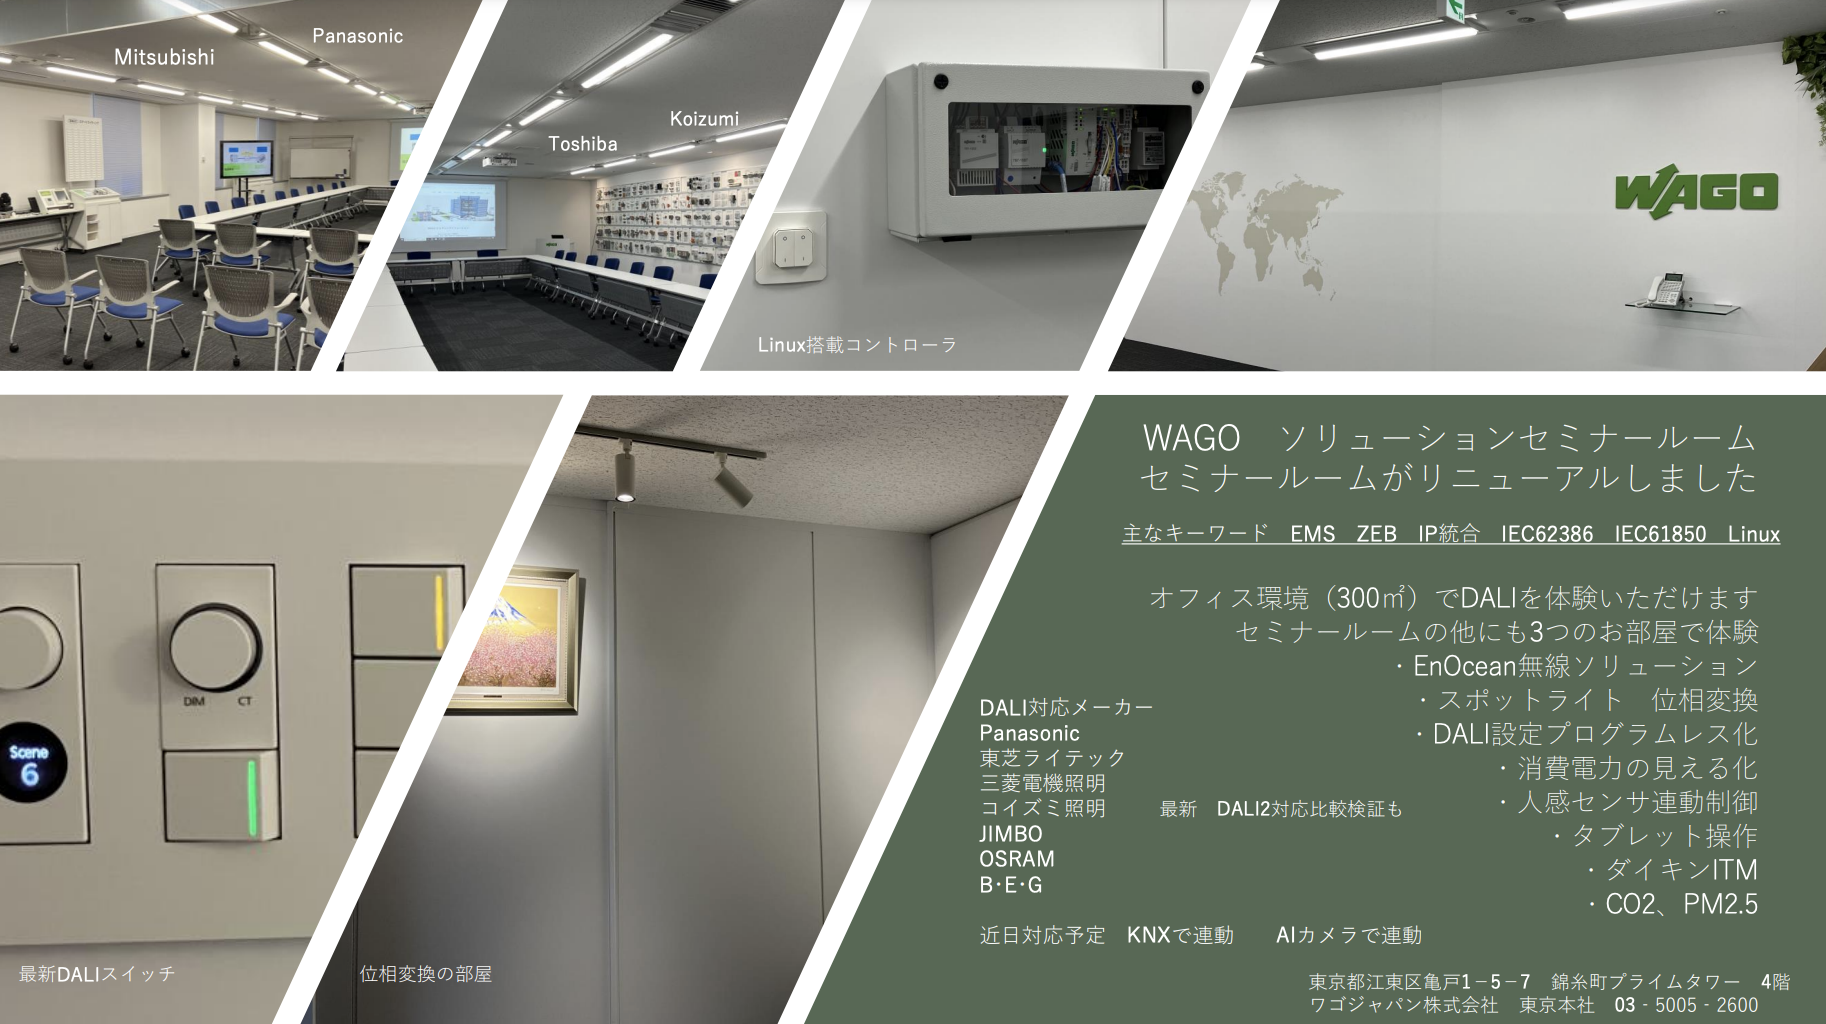 ワゴジャパン、東京オフィス DALI セミナールームがリニューアル。見学申込み受付中